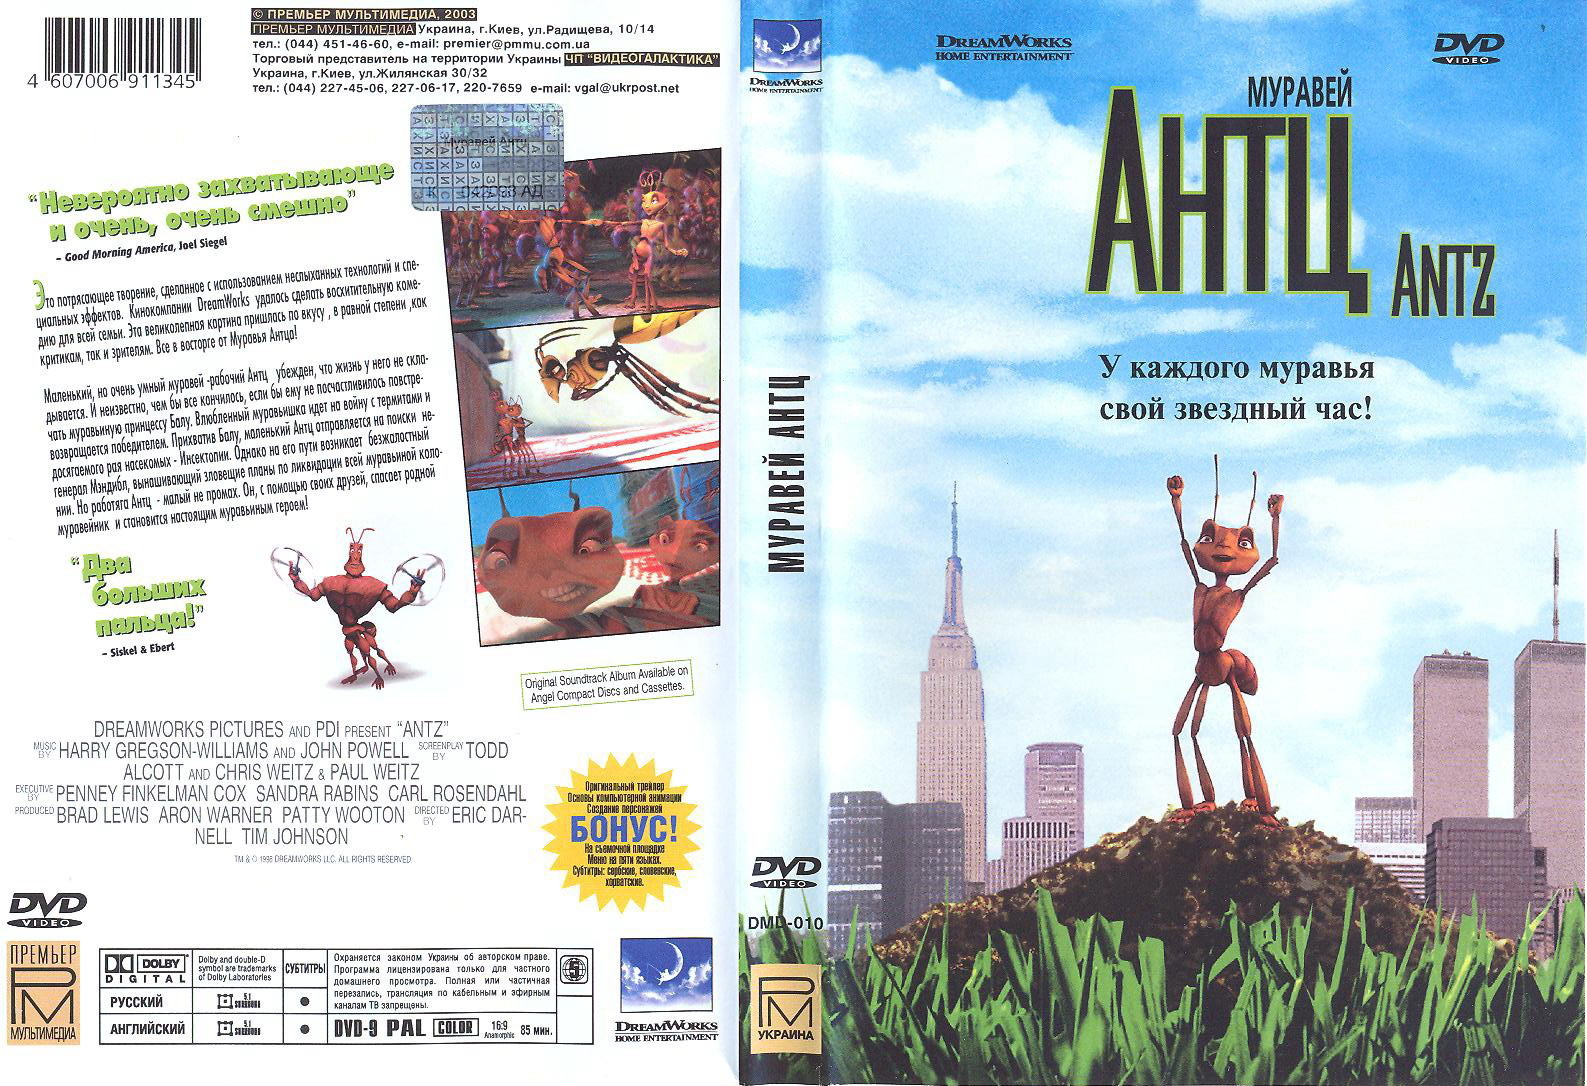 Antz Dvd Cover.